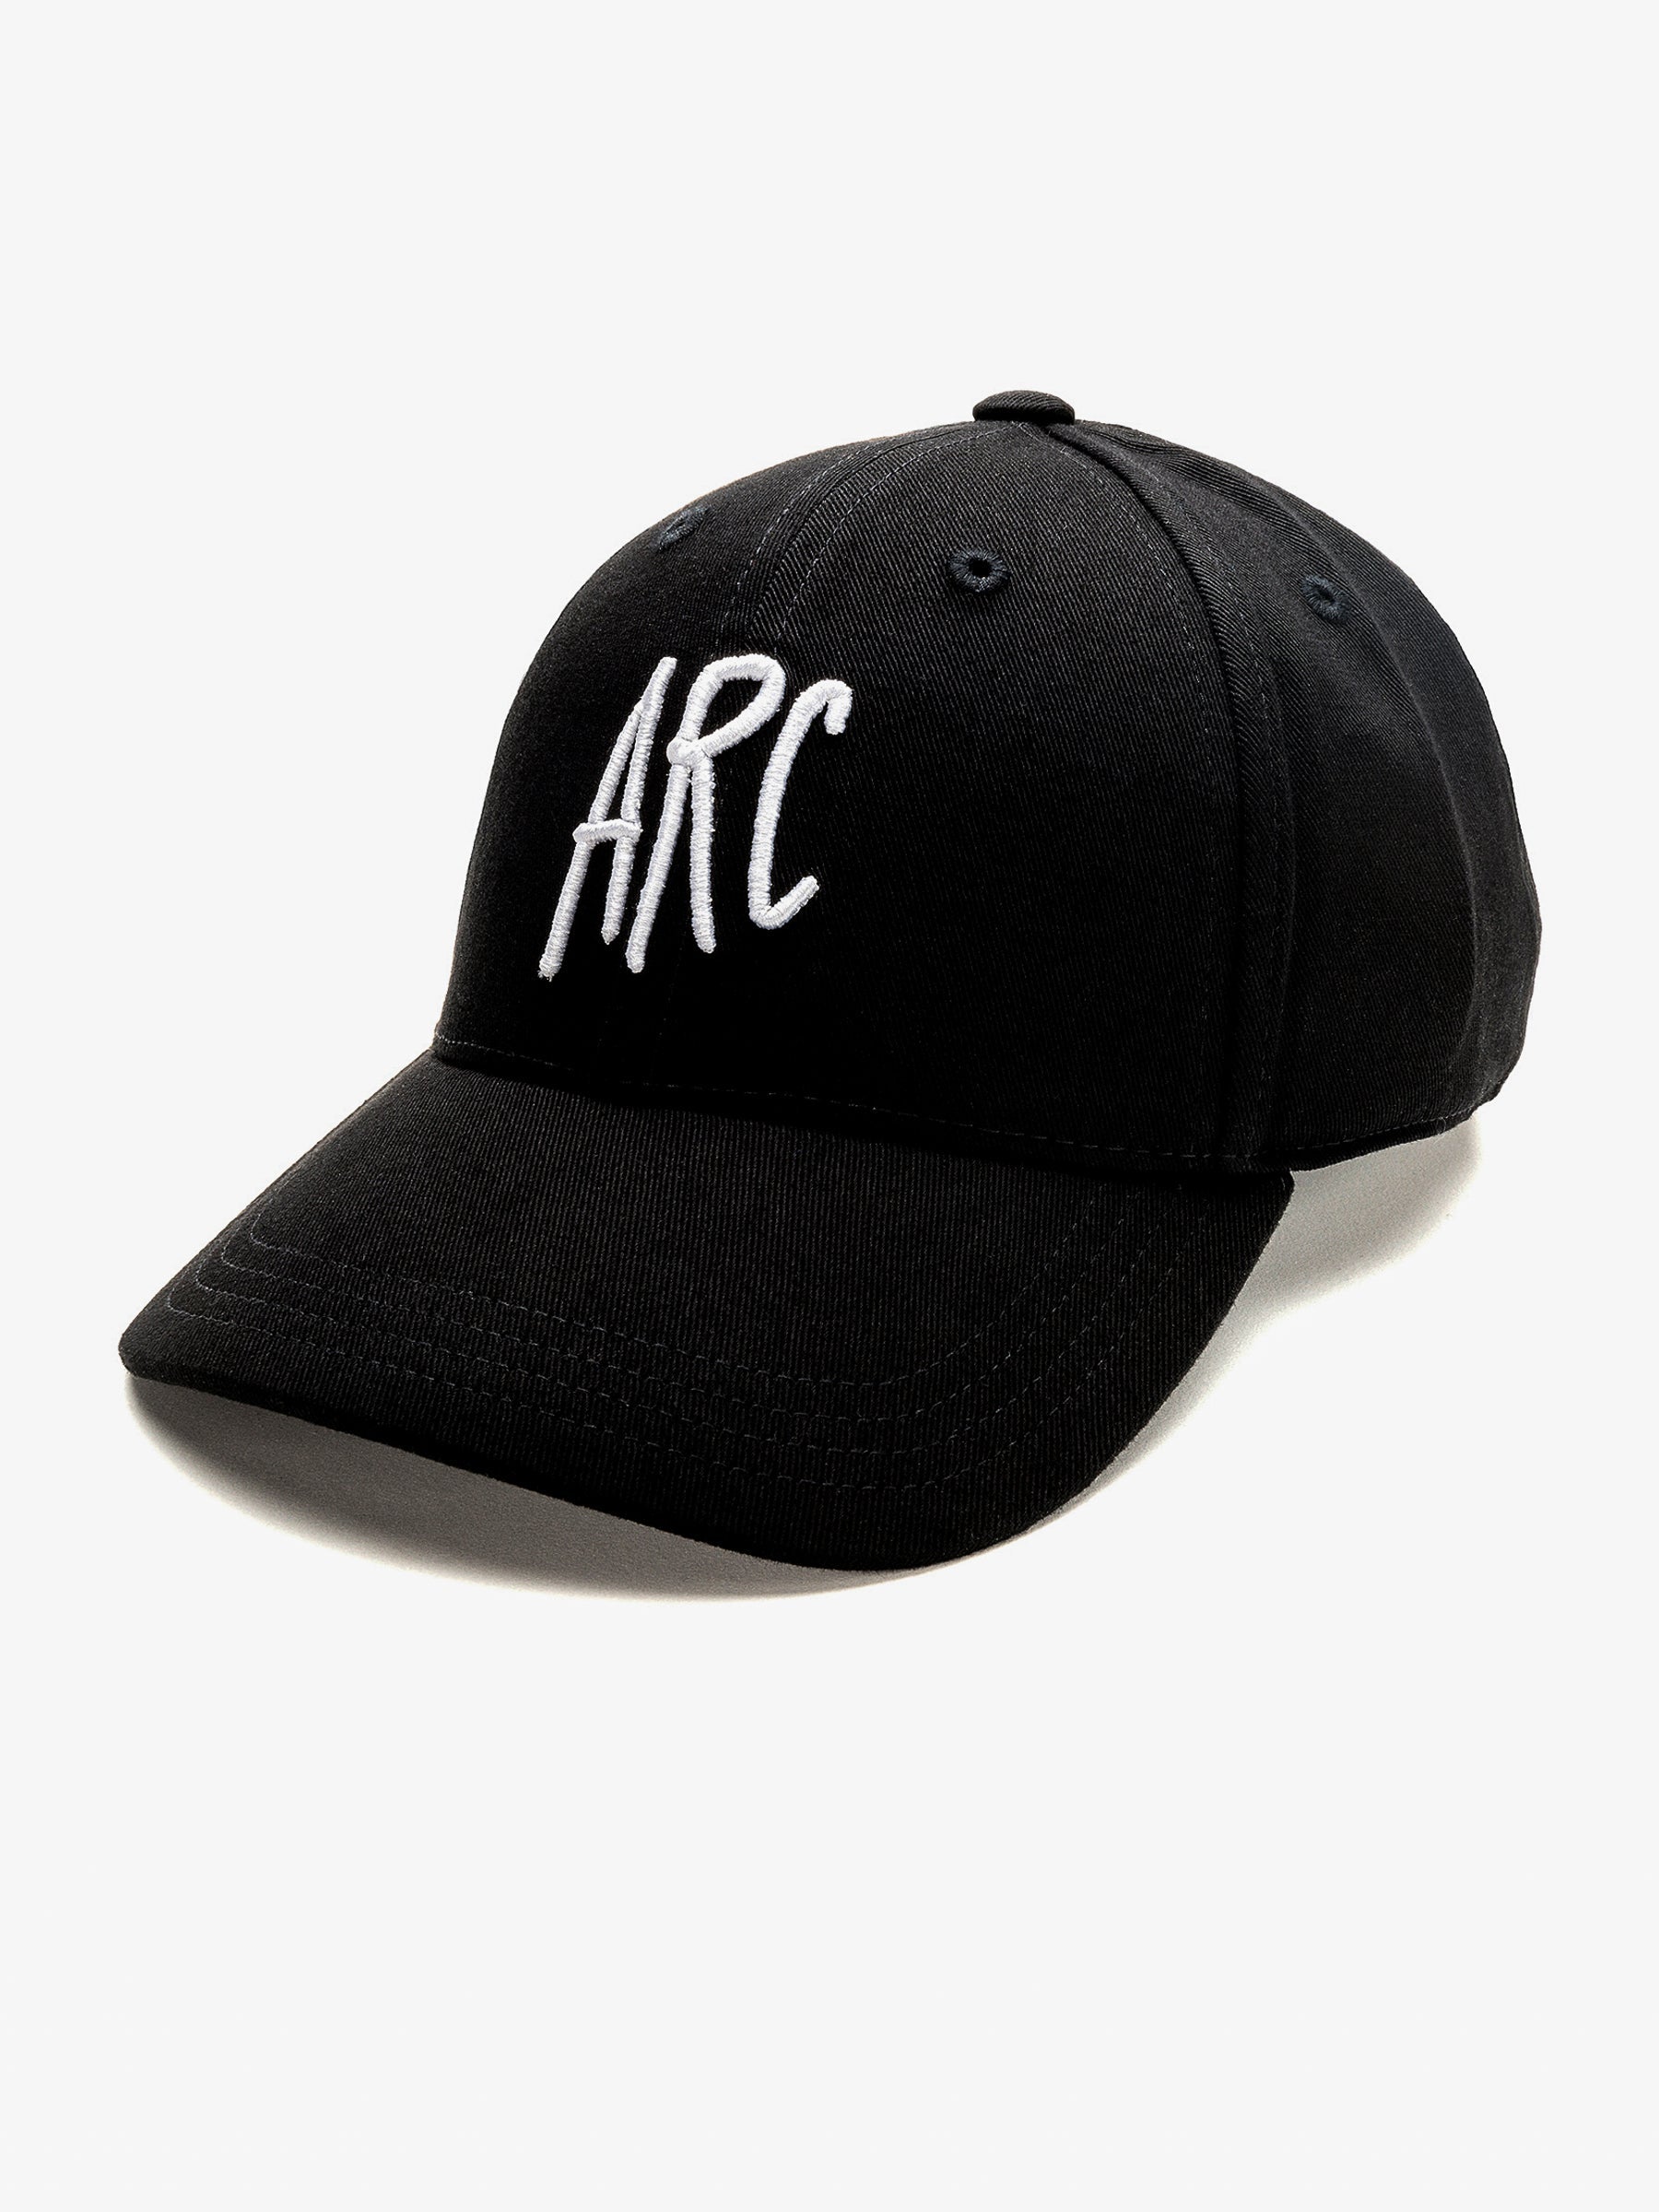 ARC CAP